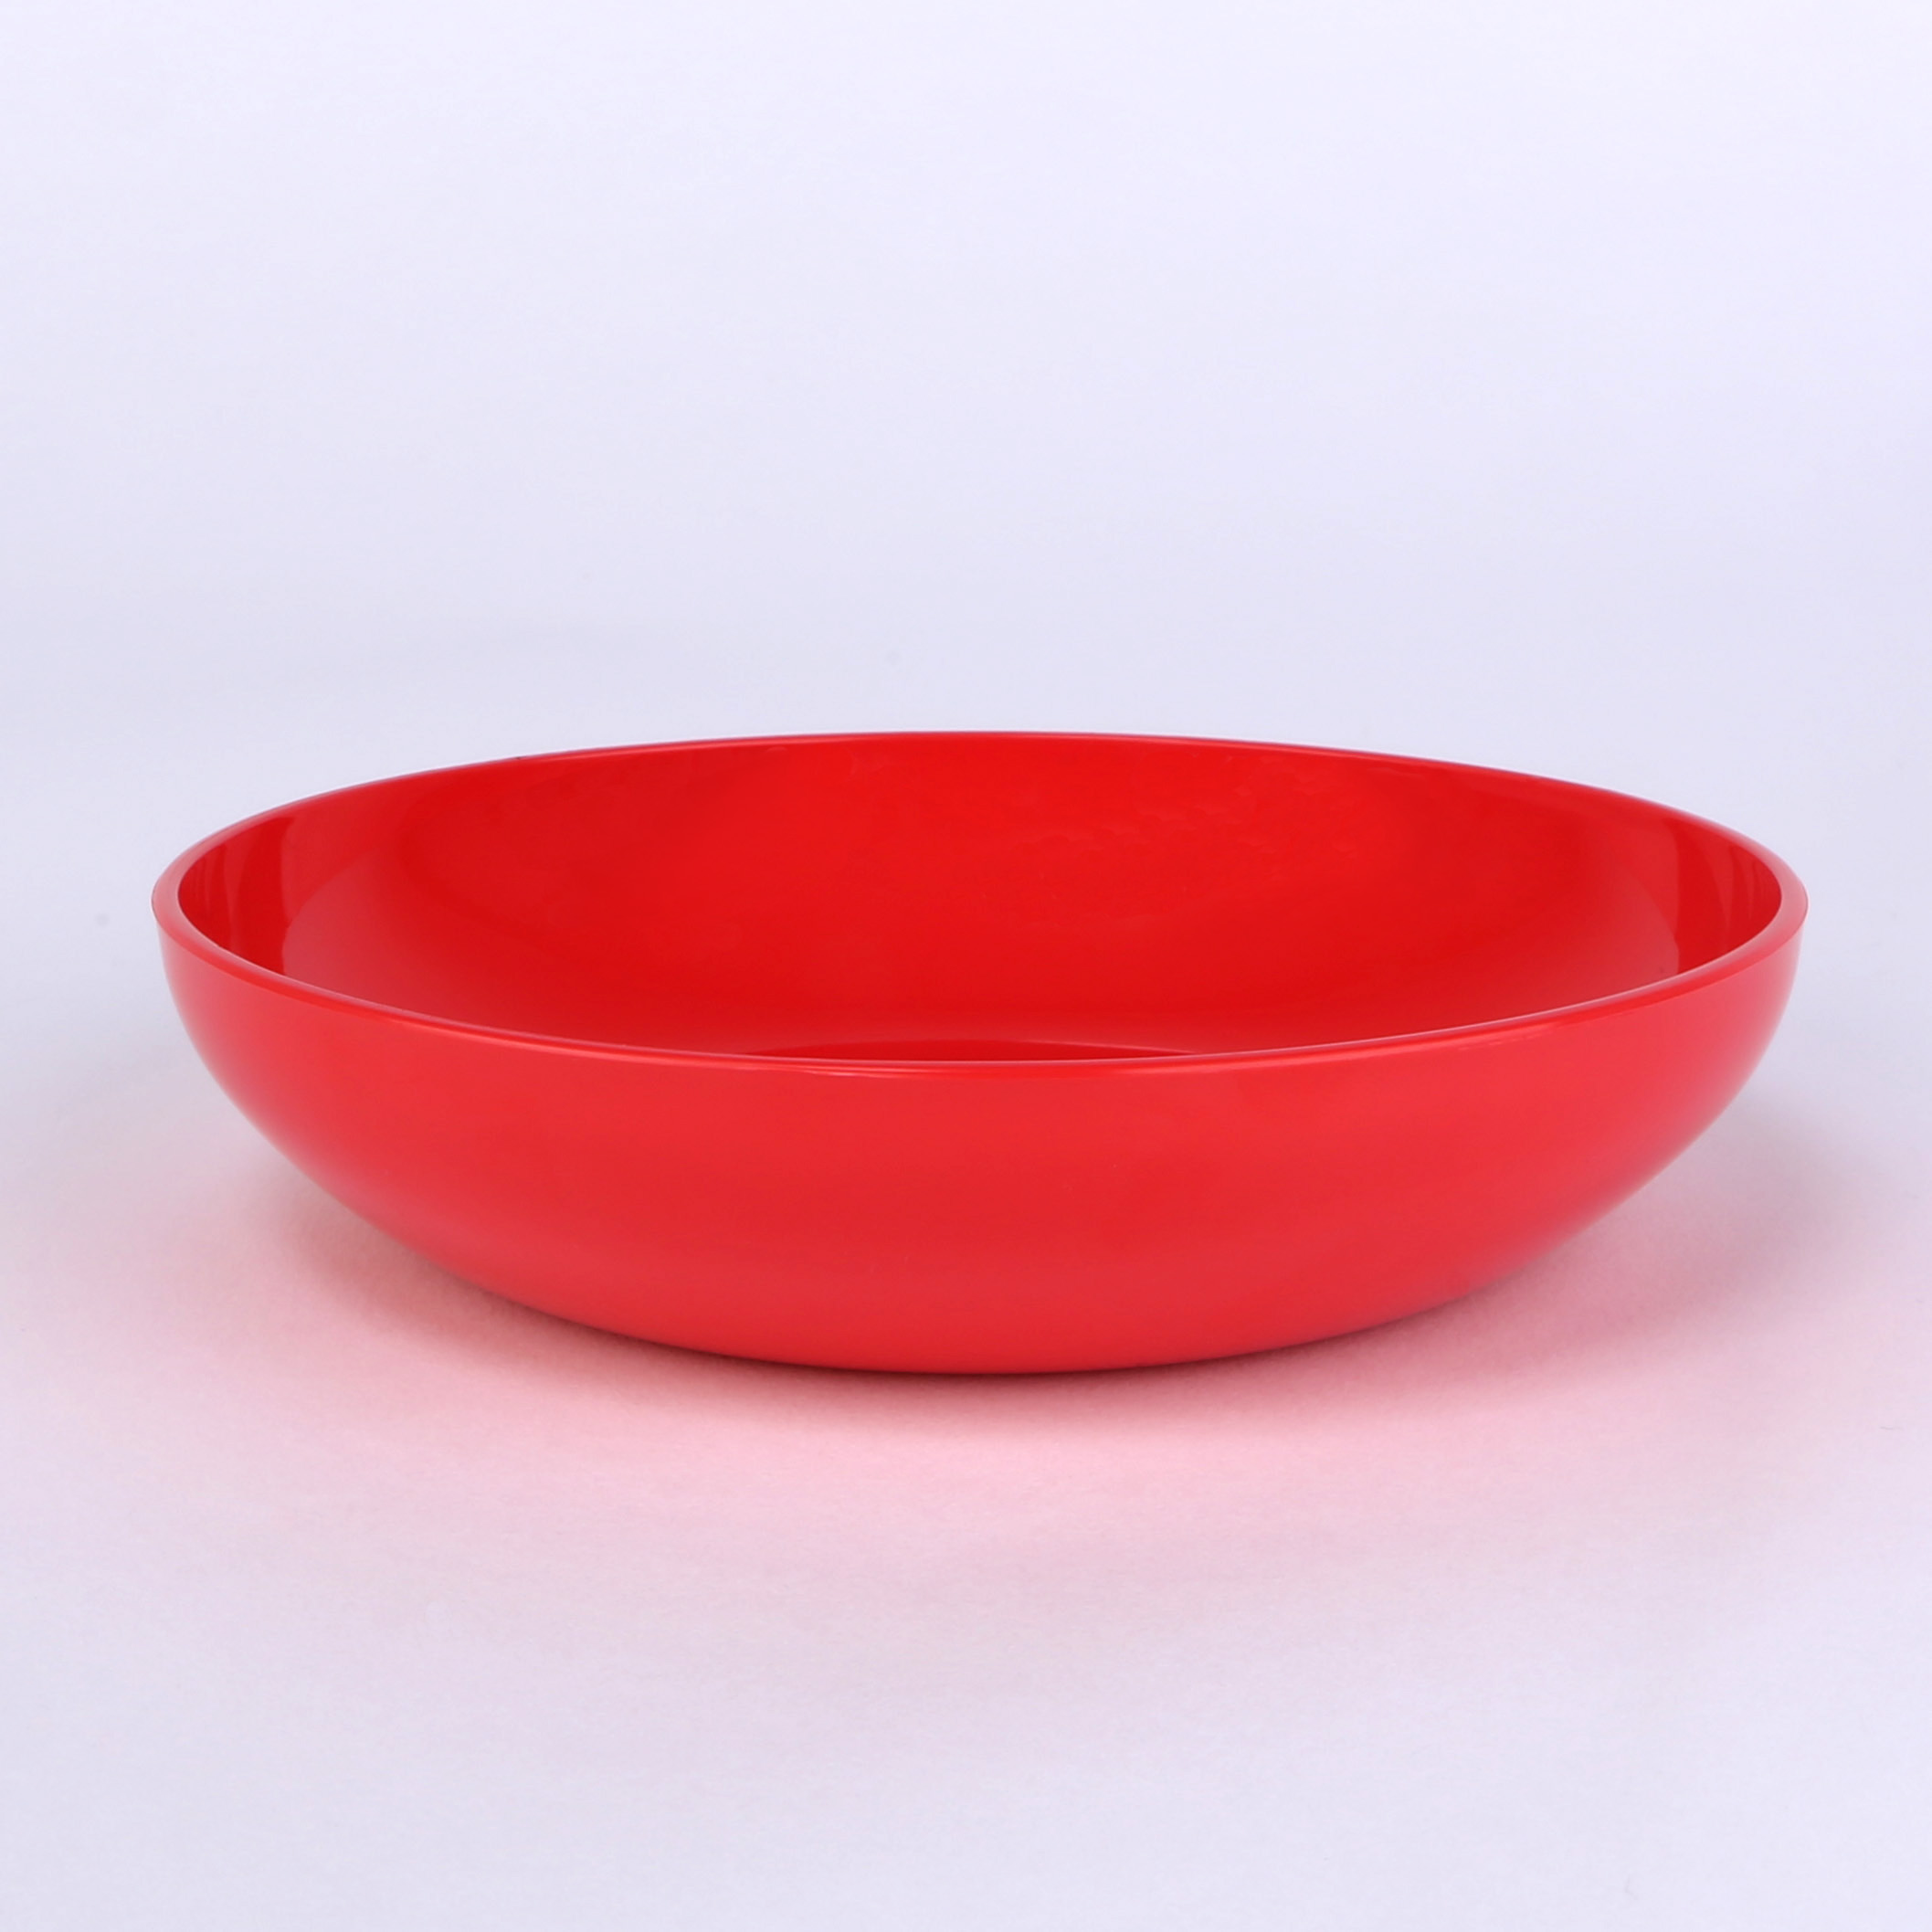 vaLon Zephyr Flache Dessertschale 13,5 cm aus schadstofffreiem Kunststoff in der Farbe rot.